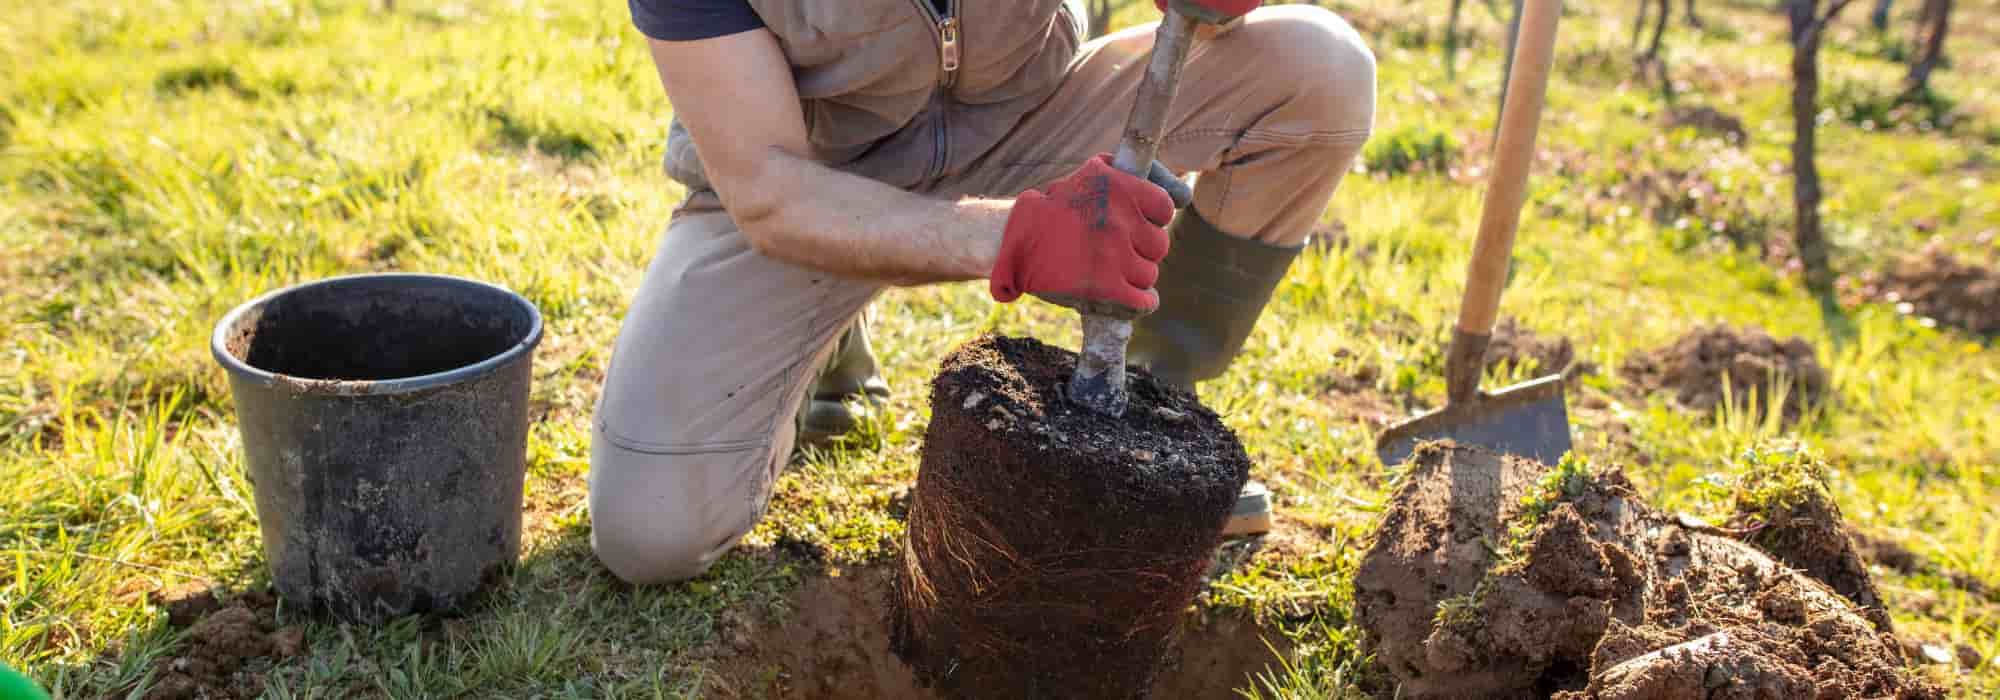 10 bonnes raisons de planter un arbre